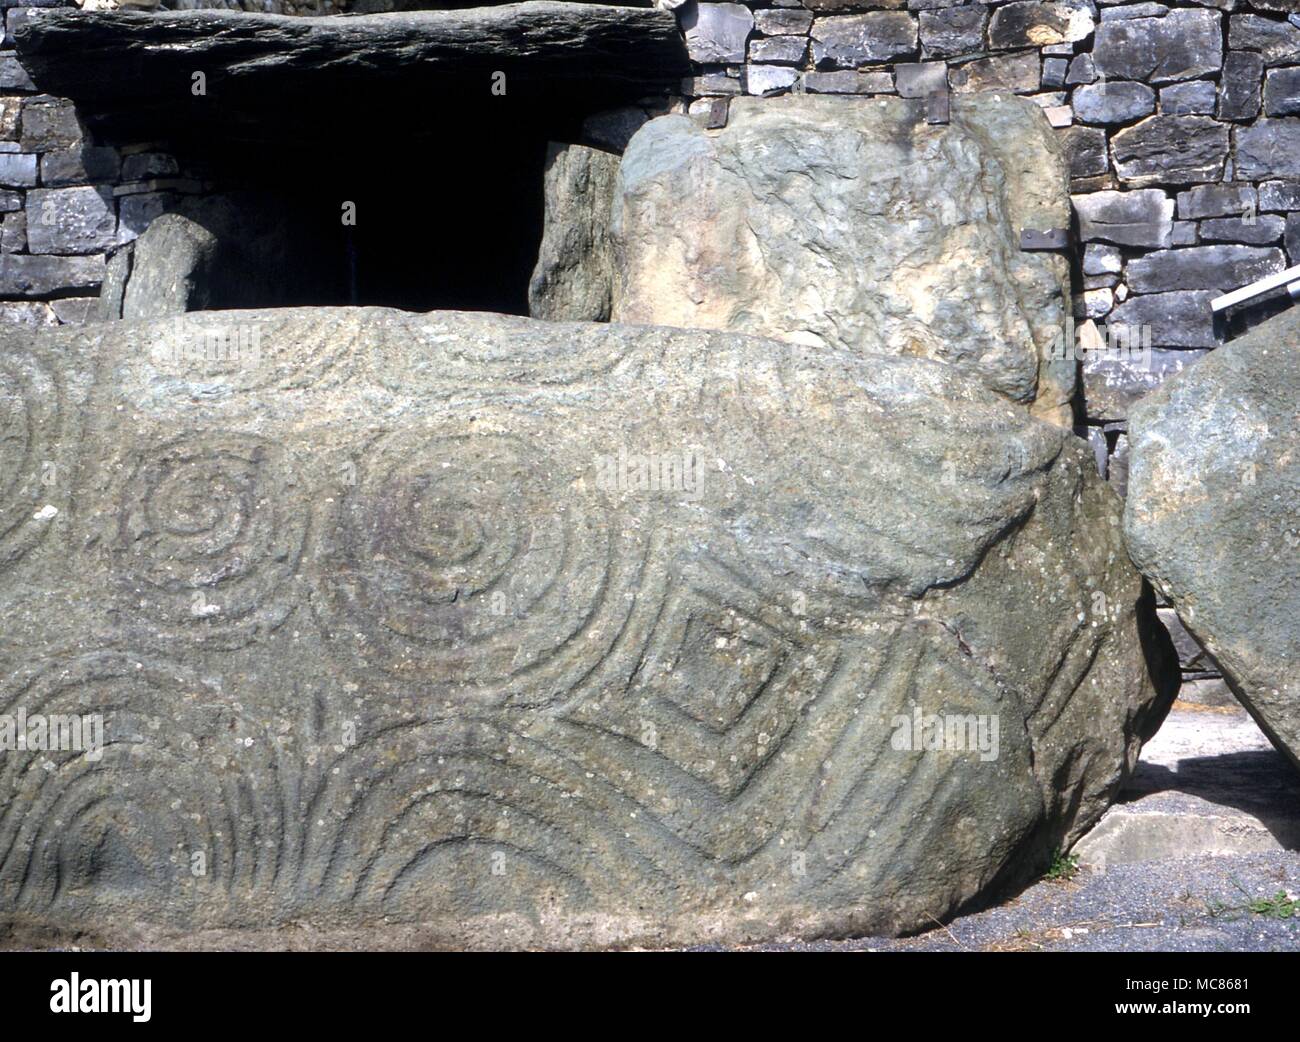 (NEWGRANGE KNOWTH) - Irische prähistorische Stätte. 3.000 v. Chr.. Die gravierten Spirale arbeiten an der massiven Bordsteinkanten am Eingang zu Newgrange. Die Schnitzereien wurden gleichzeitig mit dem Gebäude - ca. 3.000 v. Chr.. Rechte Seite Stockfoto